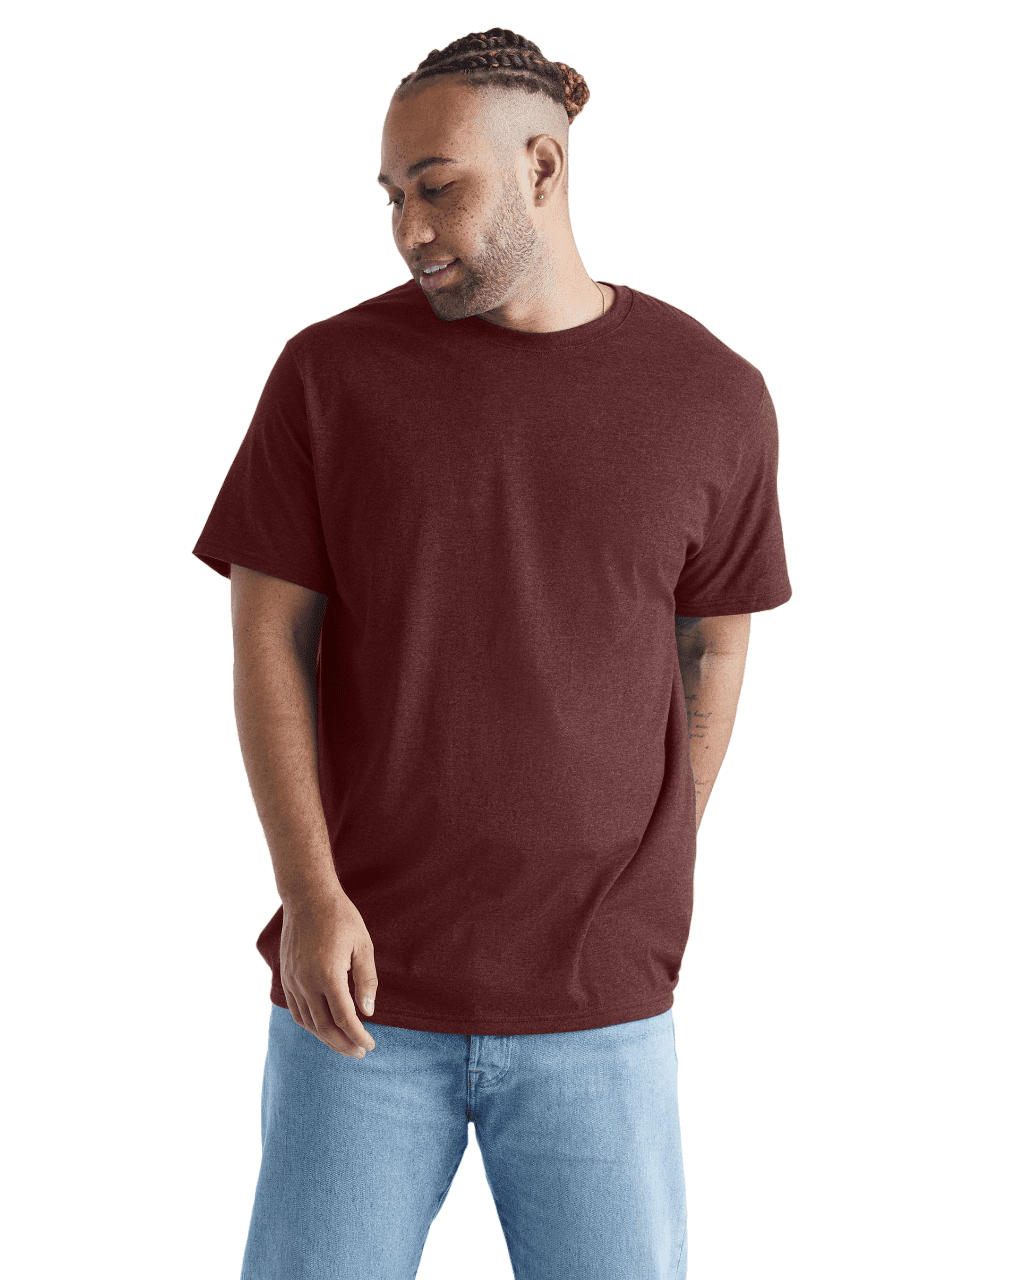 Hanes Originals Mens Big and Tall Cotton T-Shirt